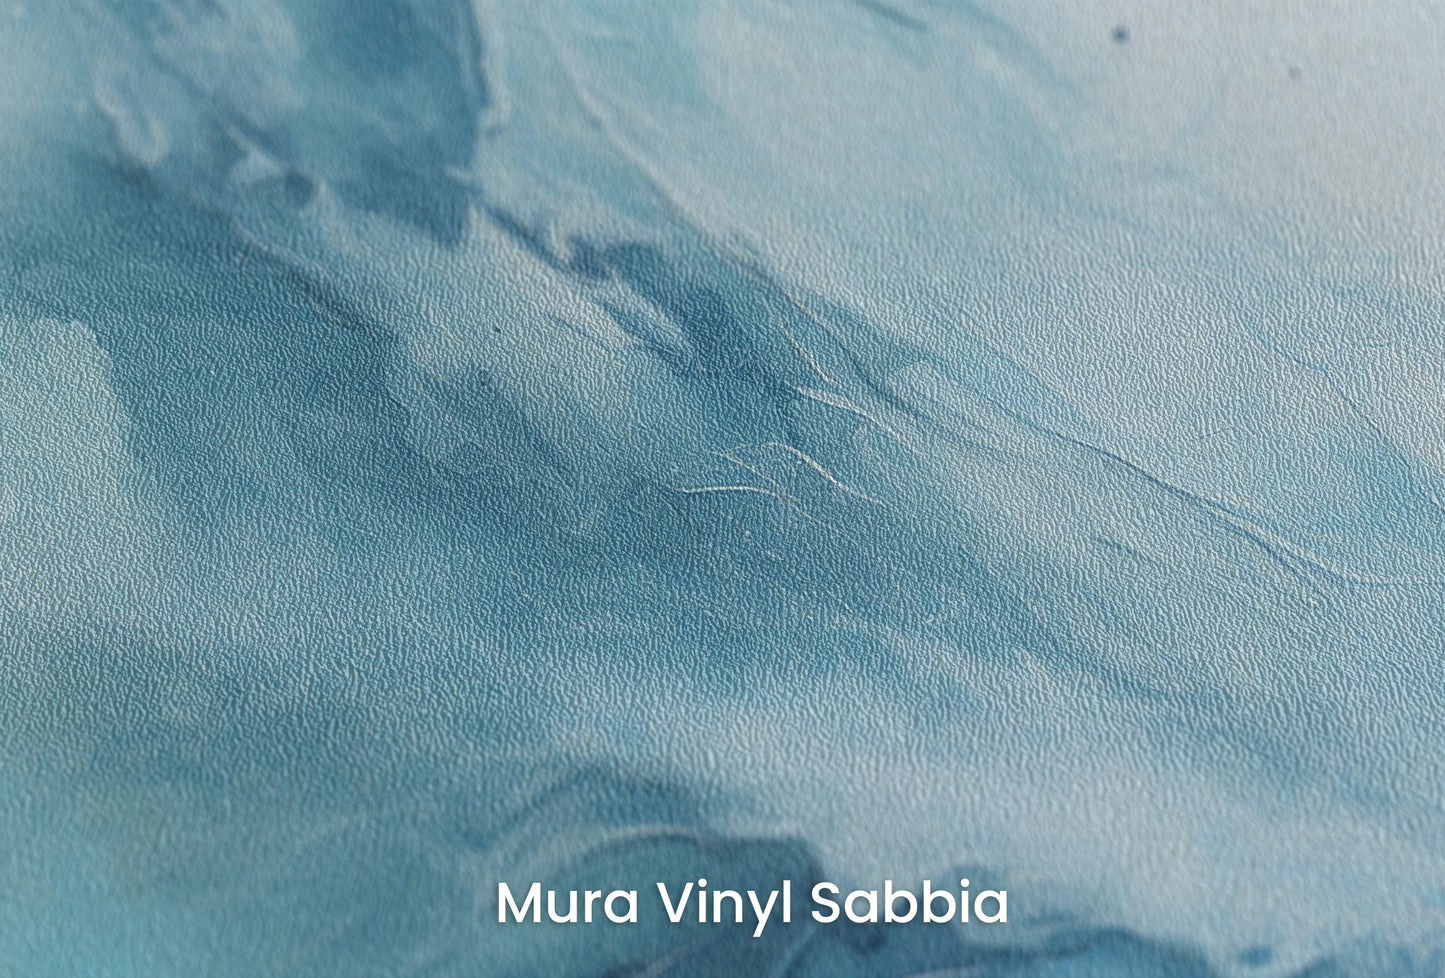 Zbliżenie na artystyczną fototapetę o nazwie Terran Rise na podłożu Mura Vinyl Sabbia struktura grubego ziarna piasku.